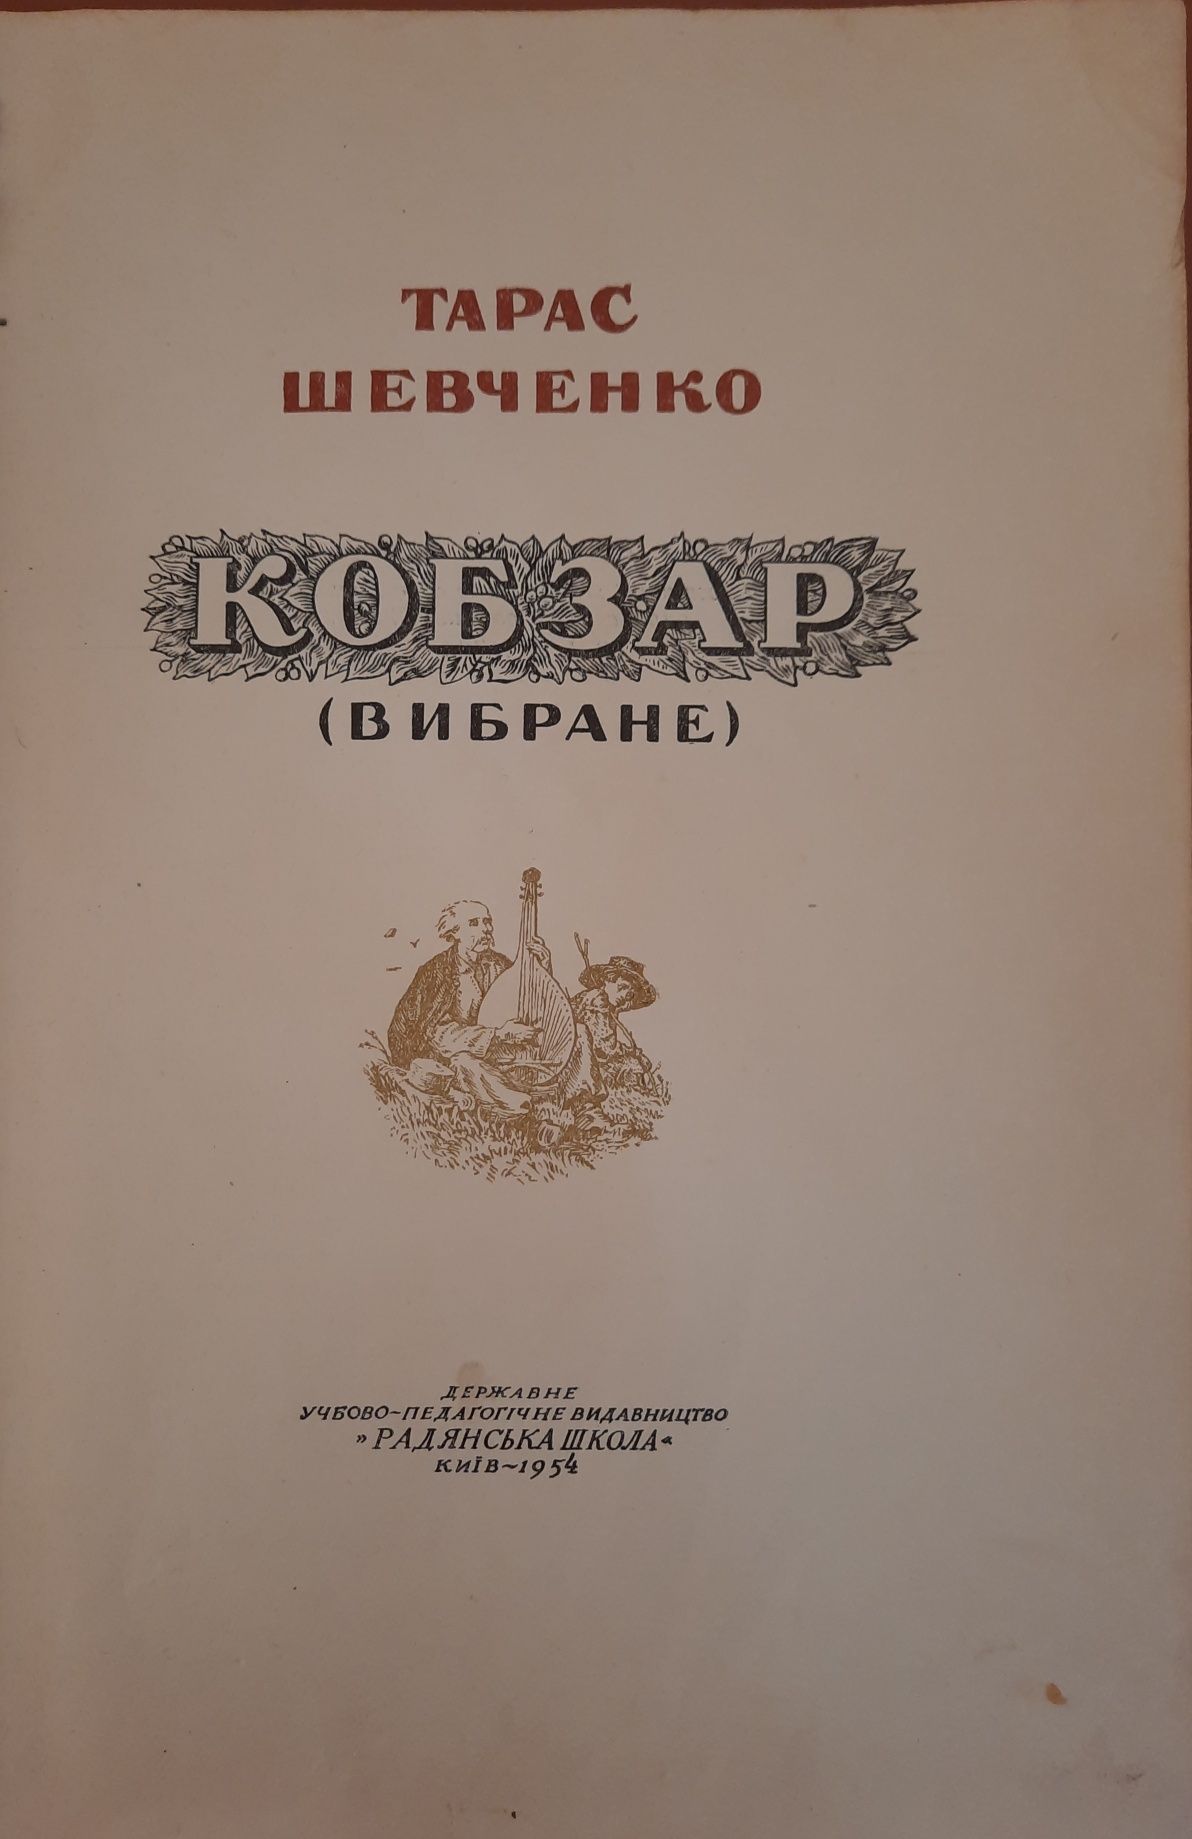 "Кобзар" Т. Шевченко, 1954г.